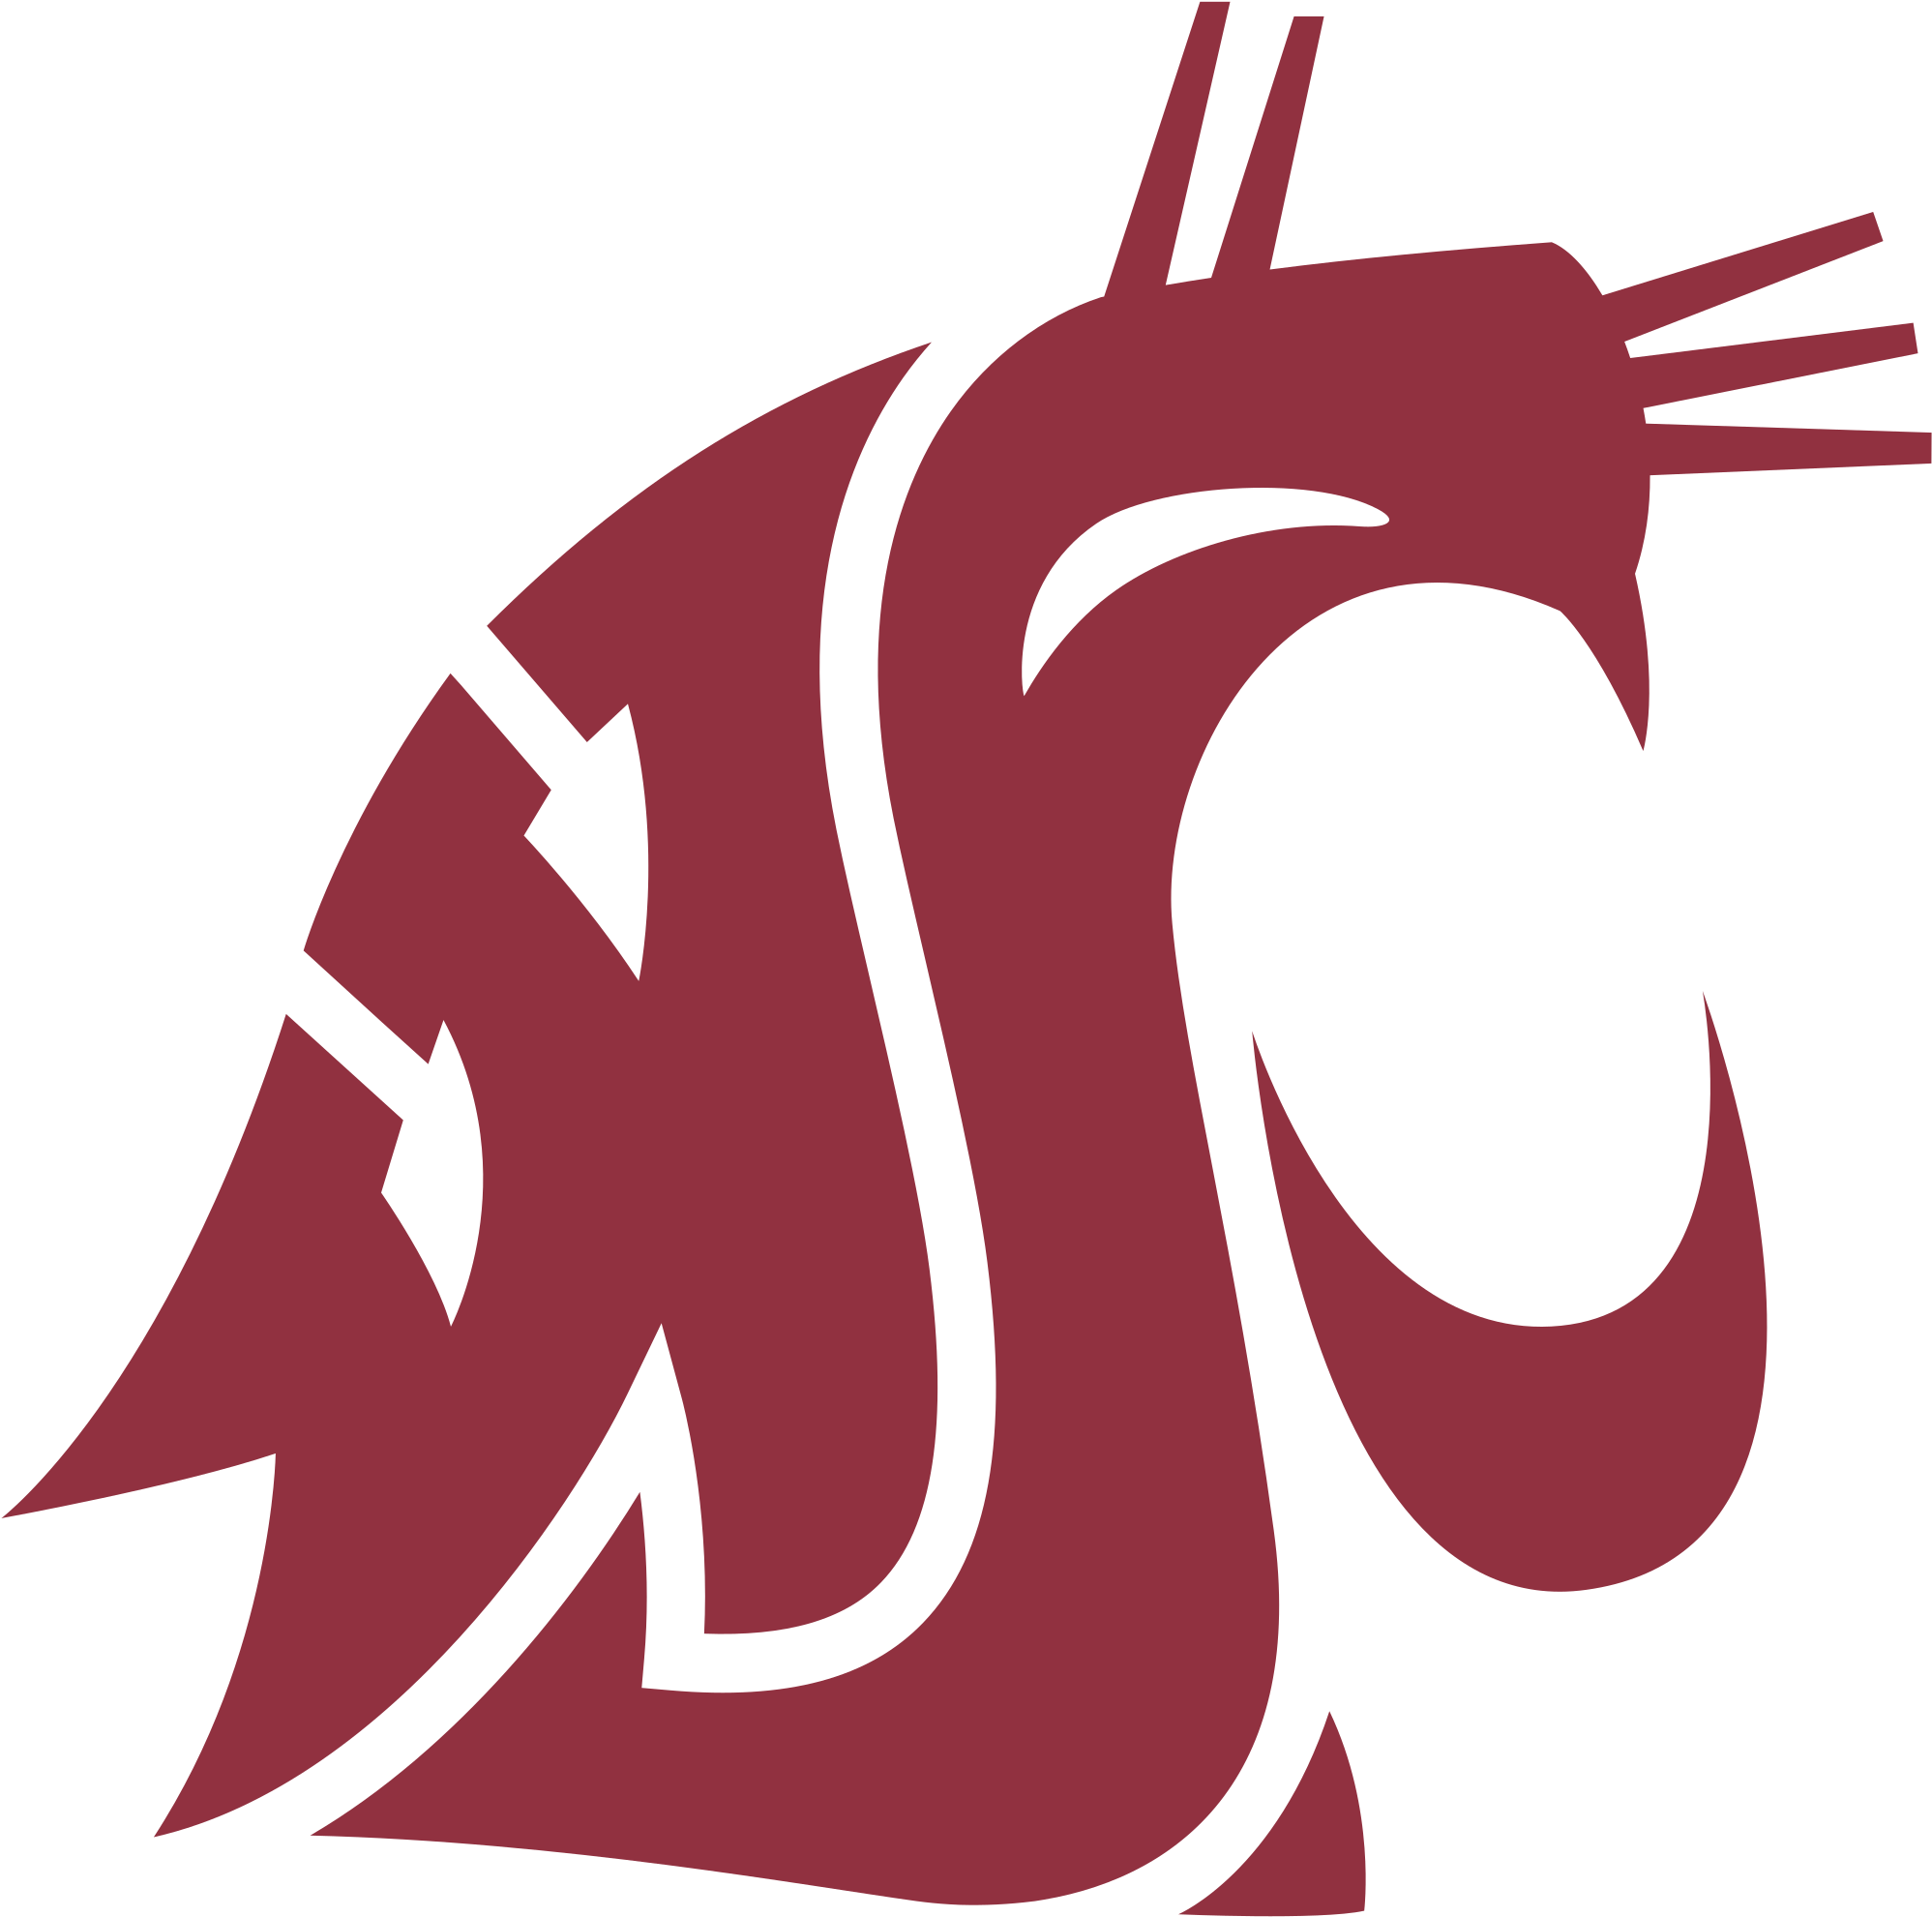 Washington State Cougars Logo Black And White - Washington State University Mascot (2400x2400)